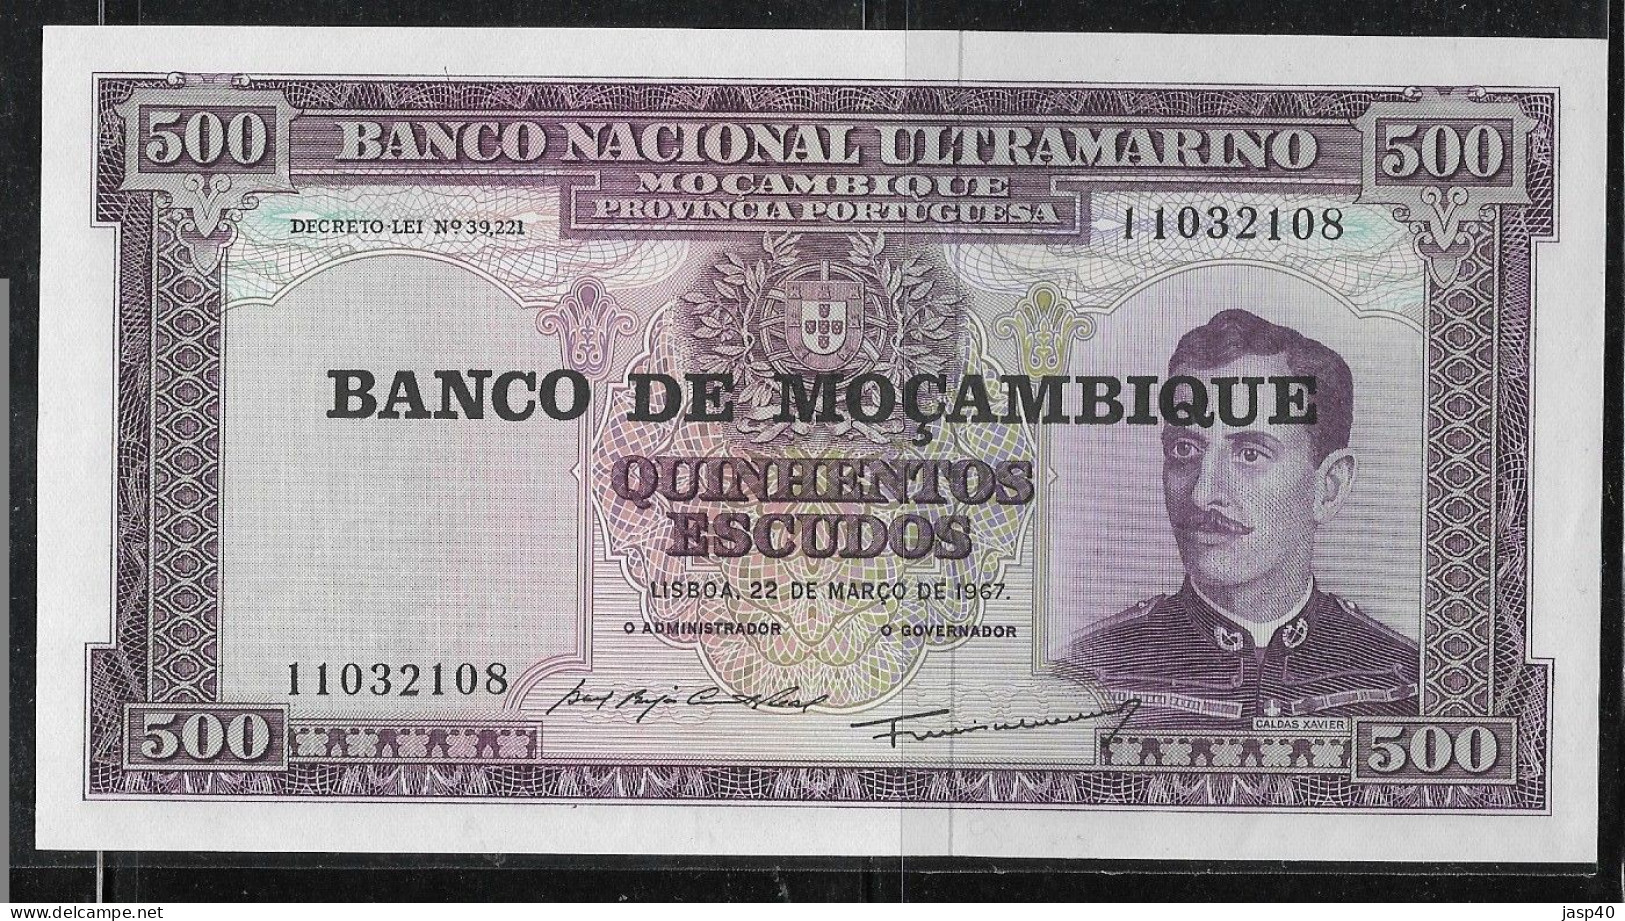 MOÇAMBIQUE - 500 ESCUDOS DE 1967 - Moçambique